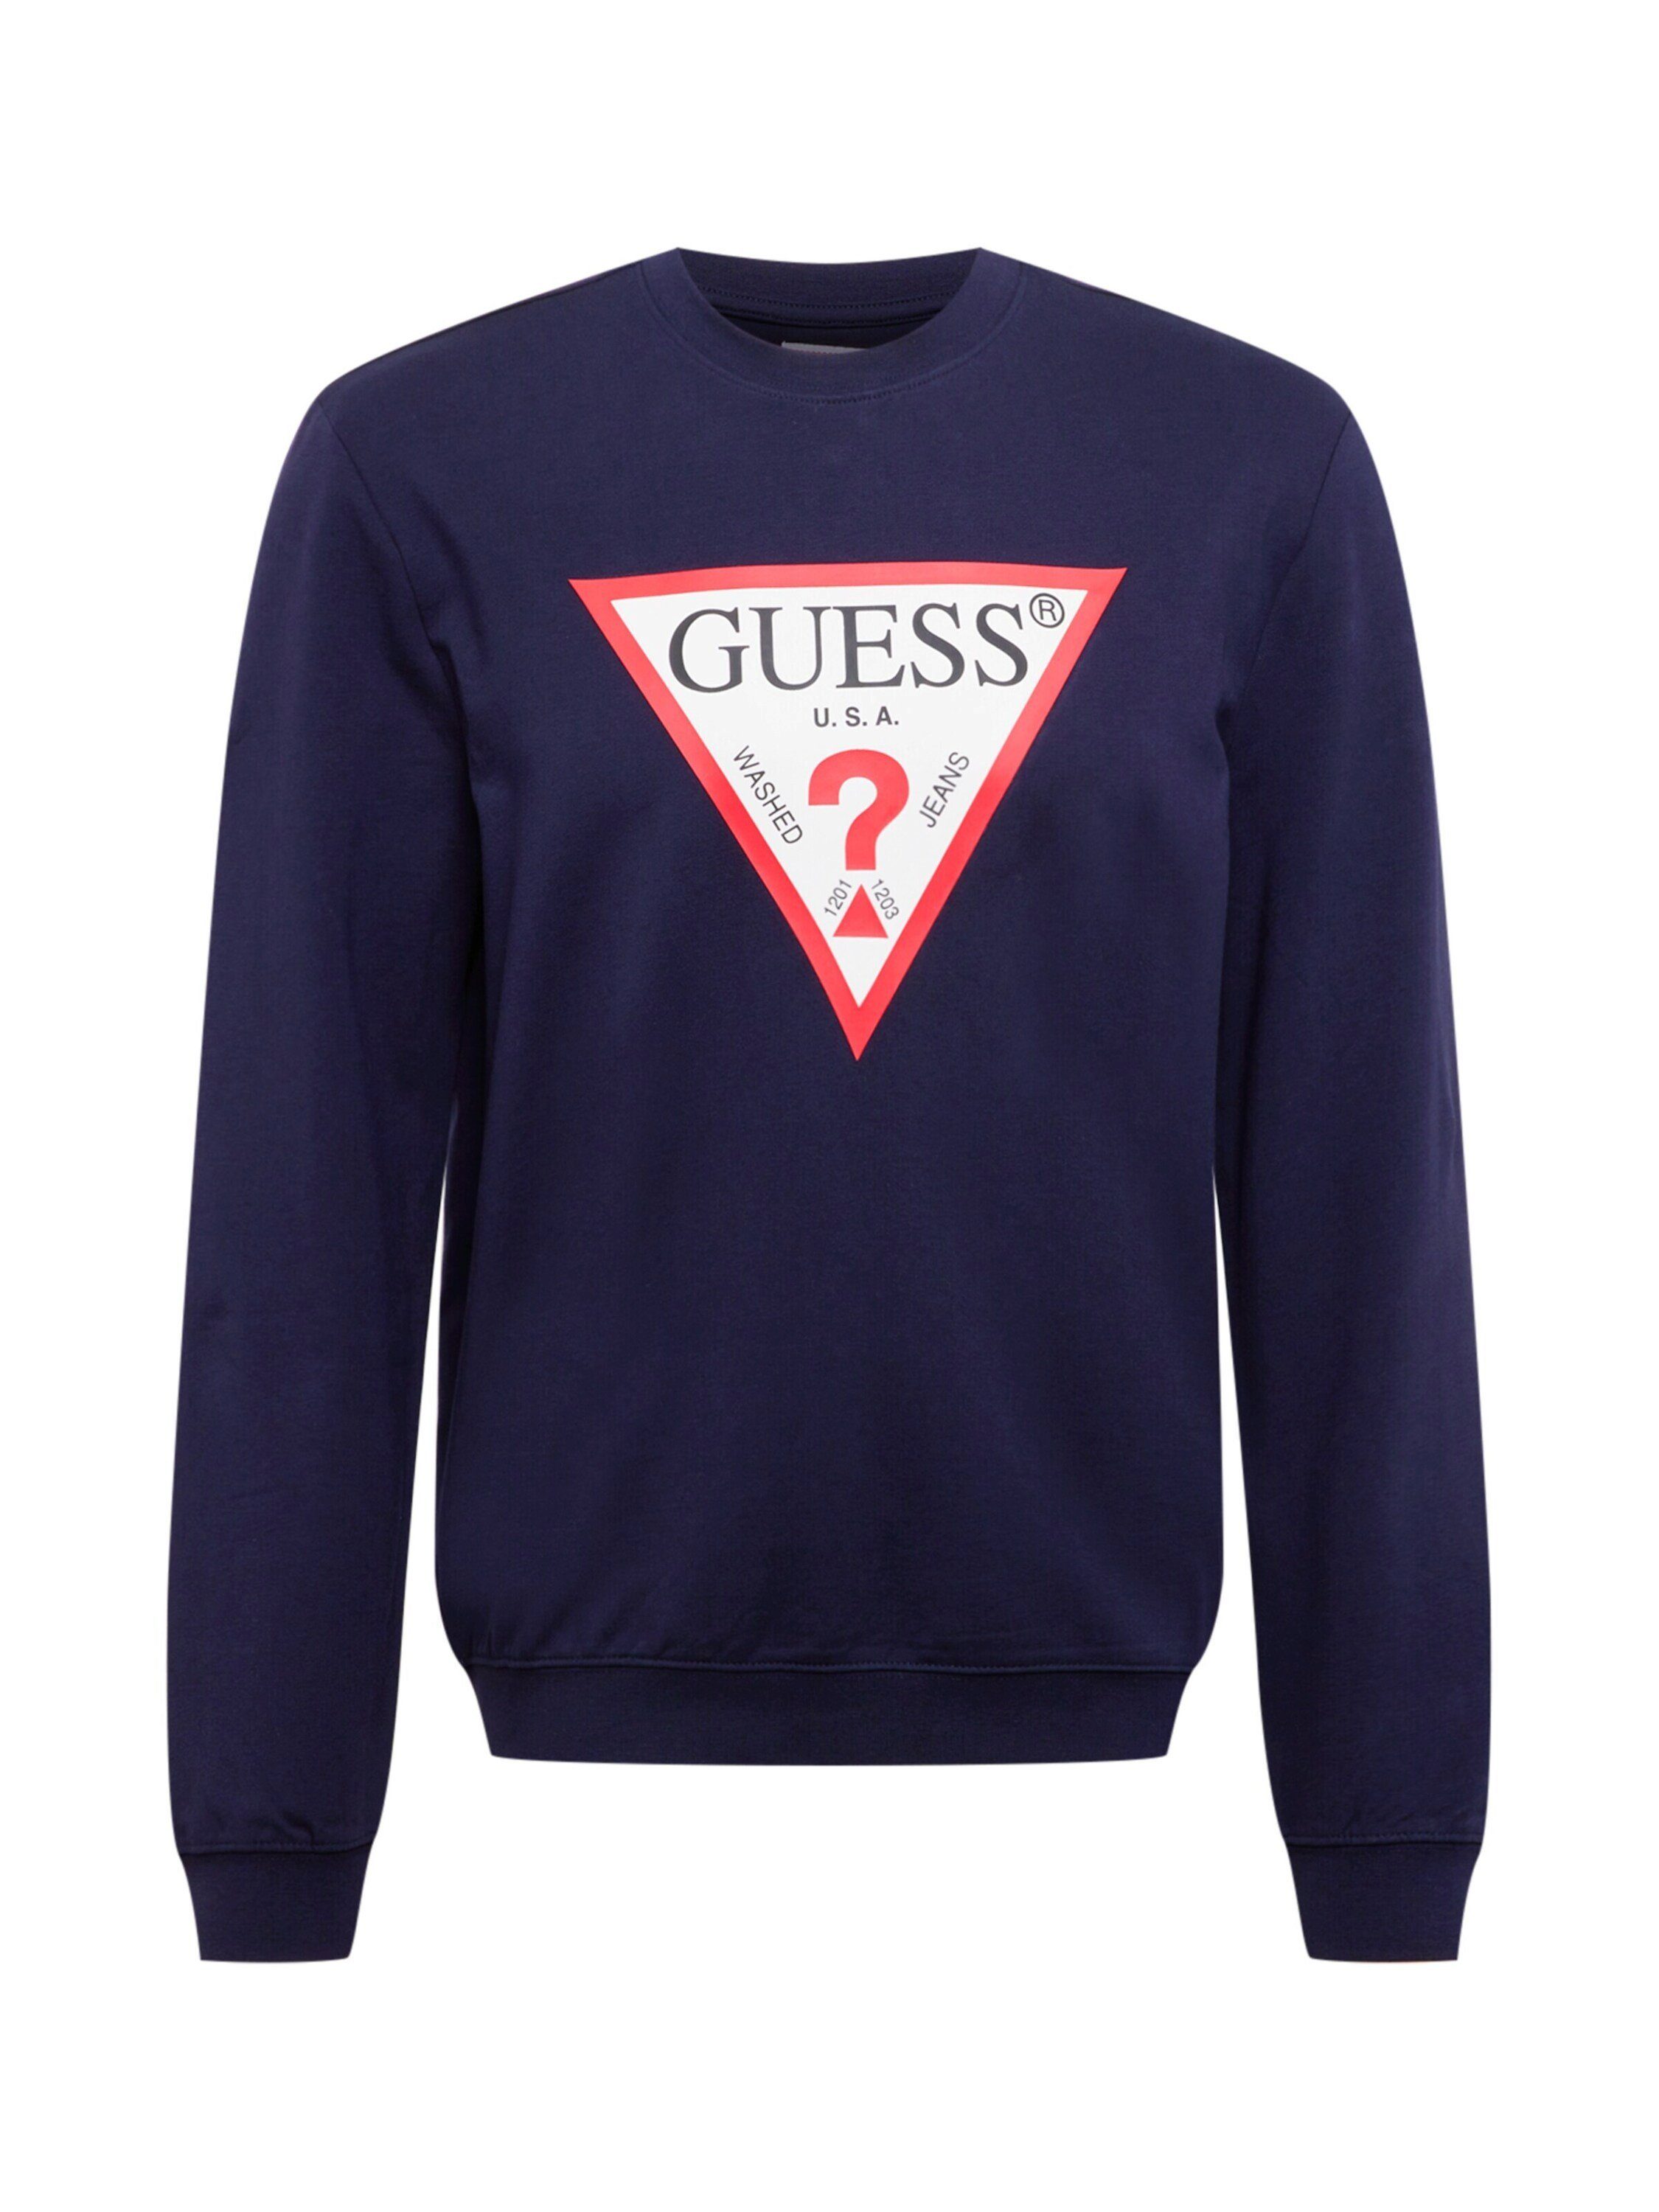 Guess Herren-Pullover online kaufen | OTTO